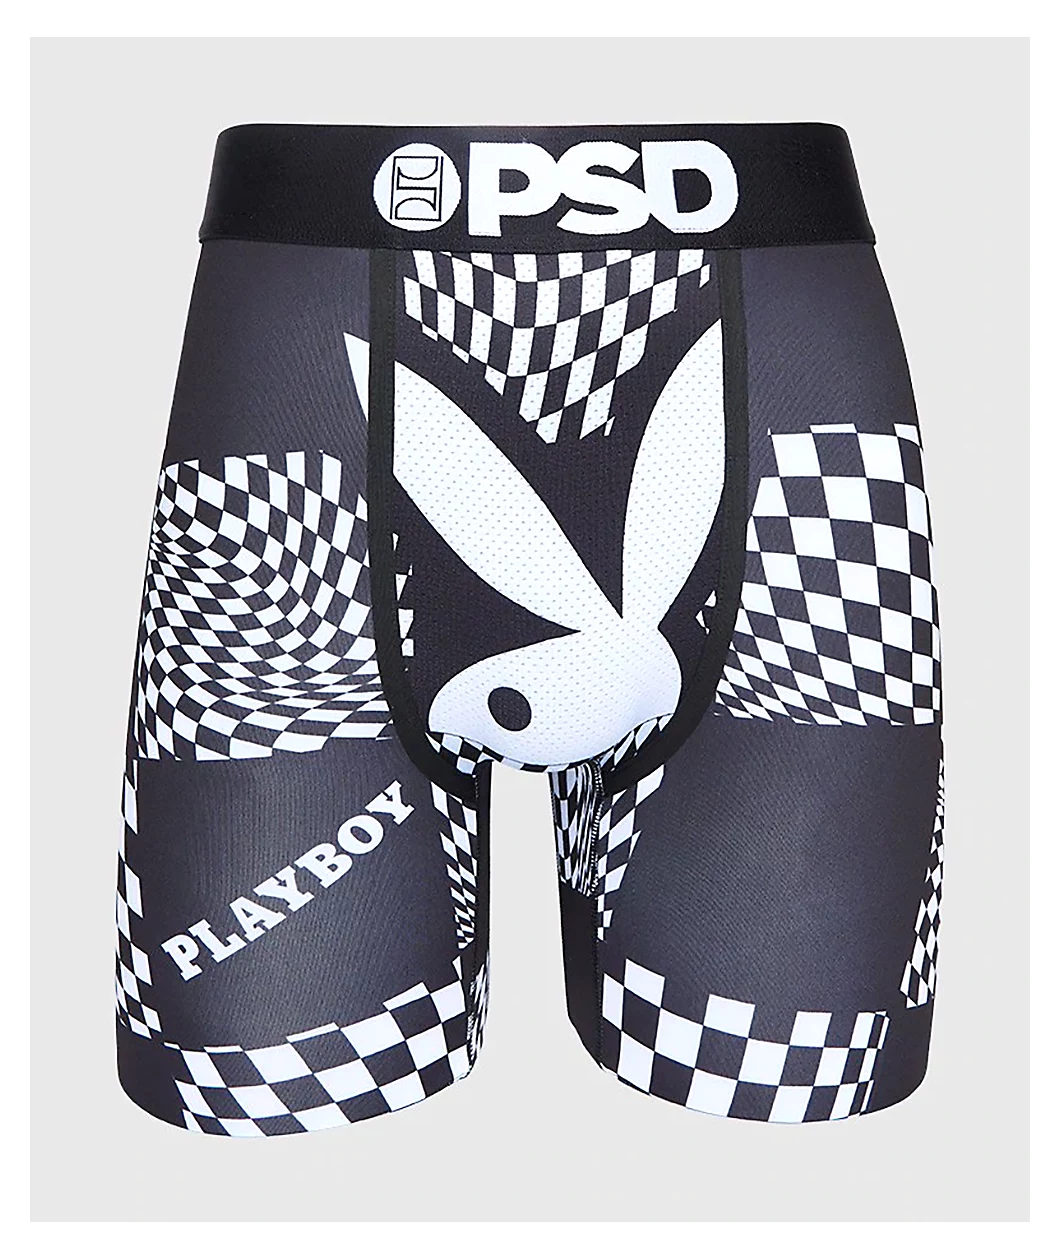 PSD x Playboy Logo Sports Bra